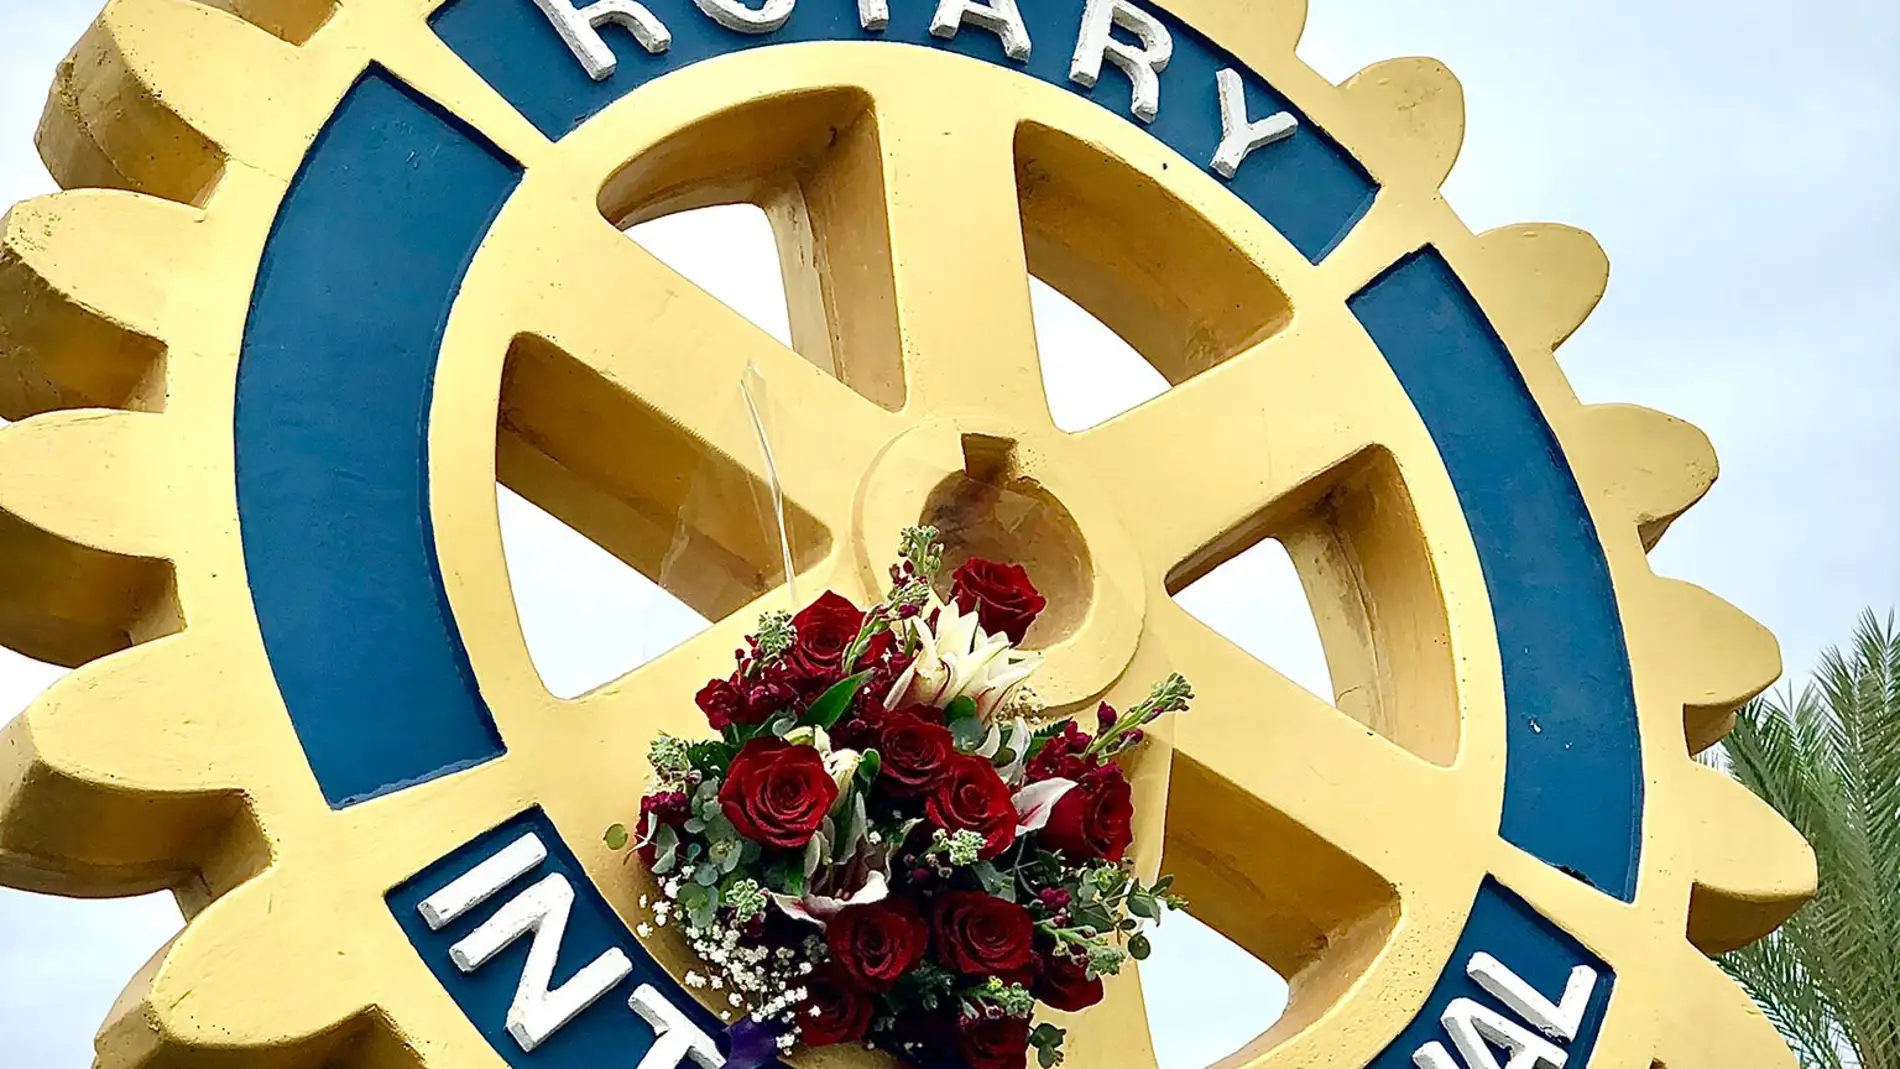 Como cada año, los miembros del Rotary Club Torrevieja conmemoran la fecha del aniversario rotario en el mismo lugar 